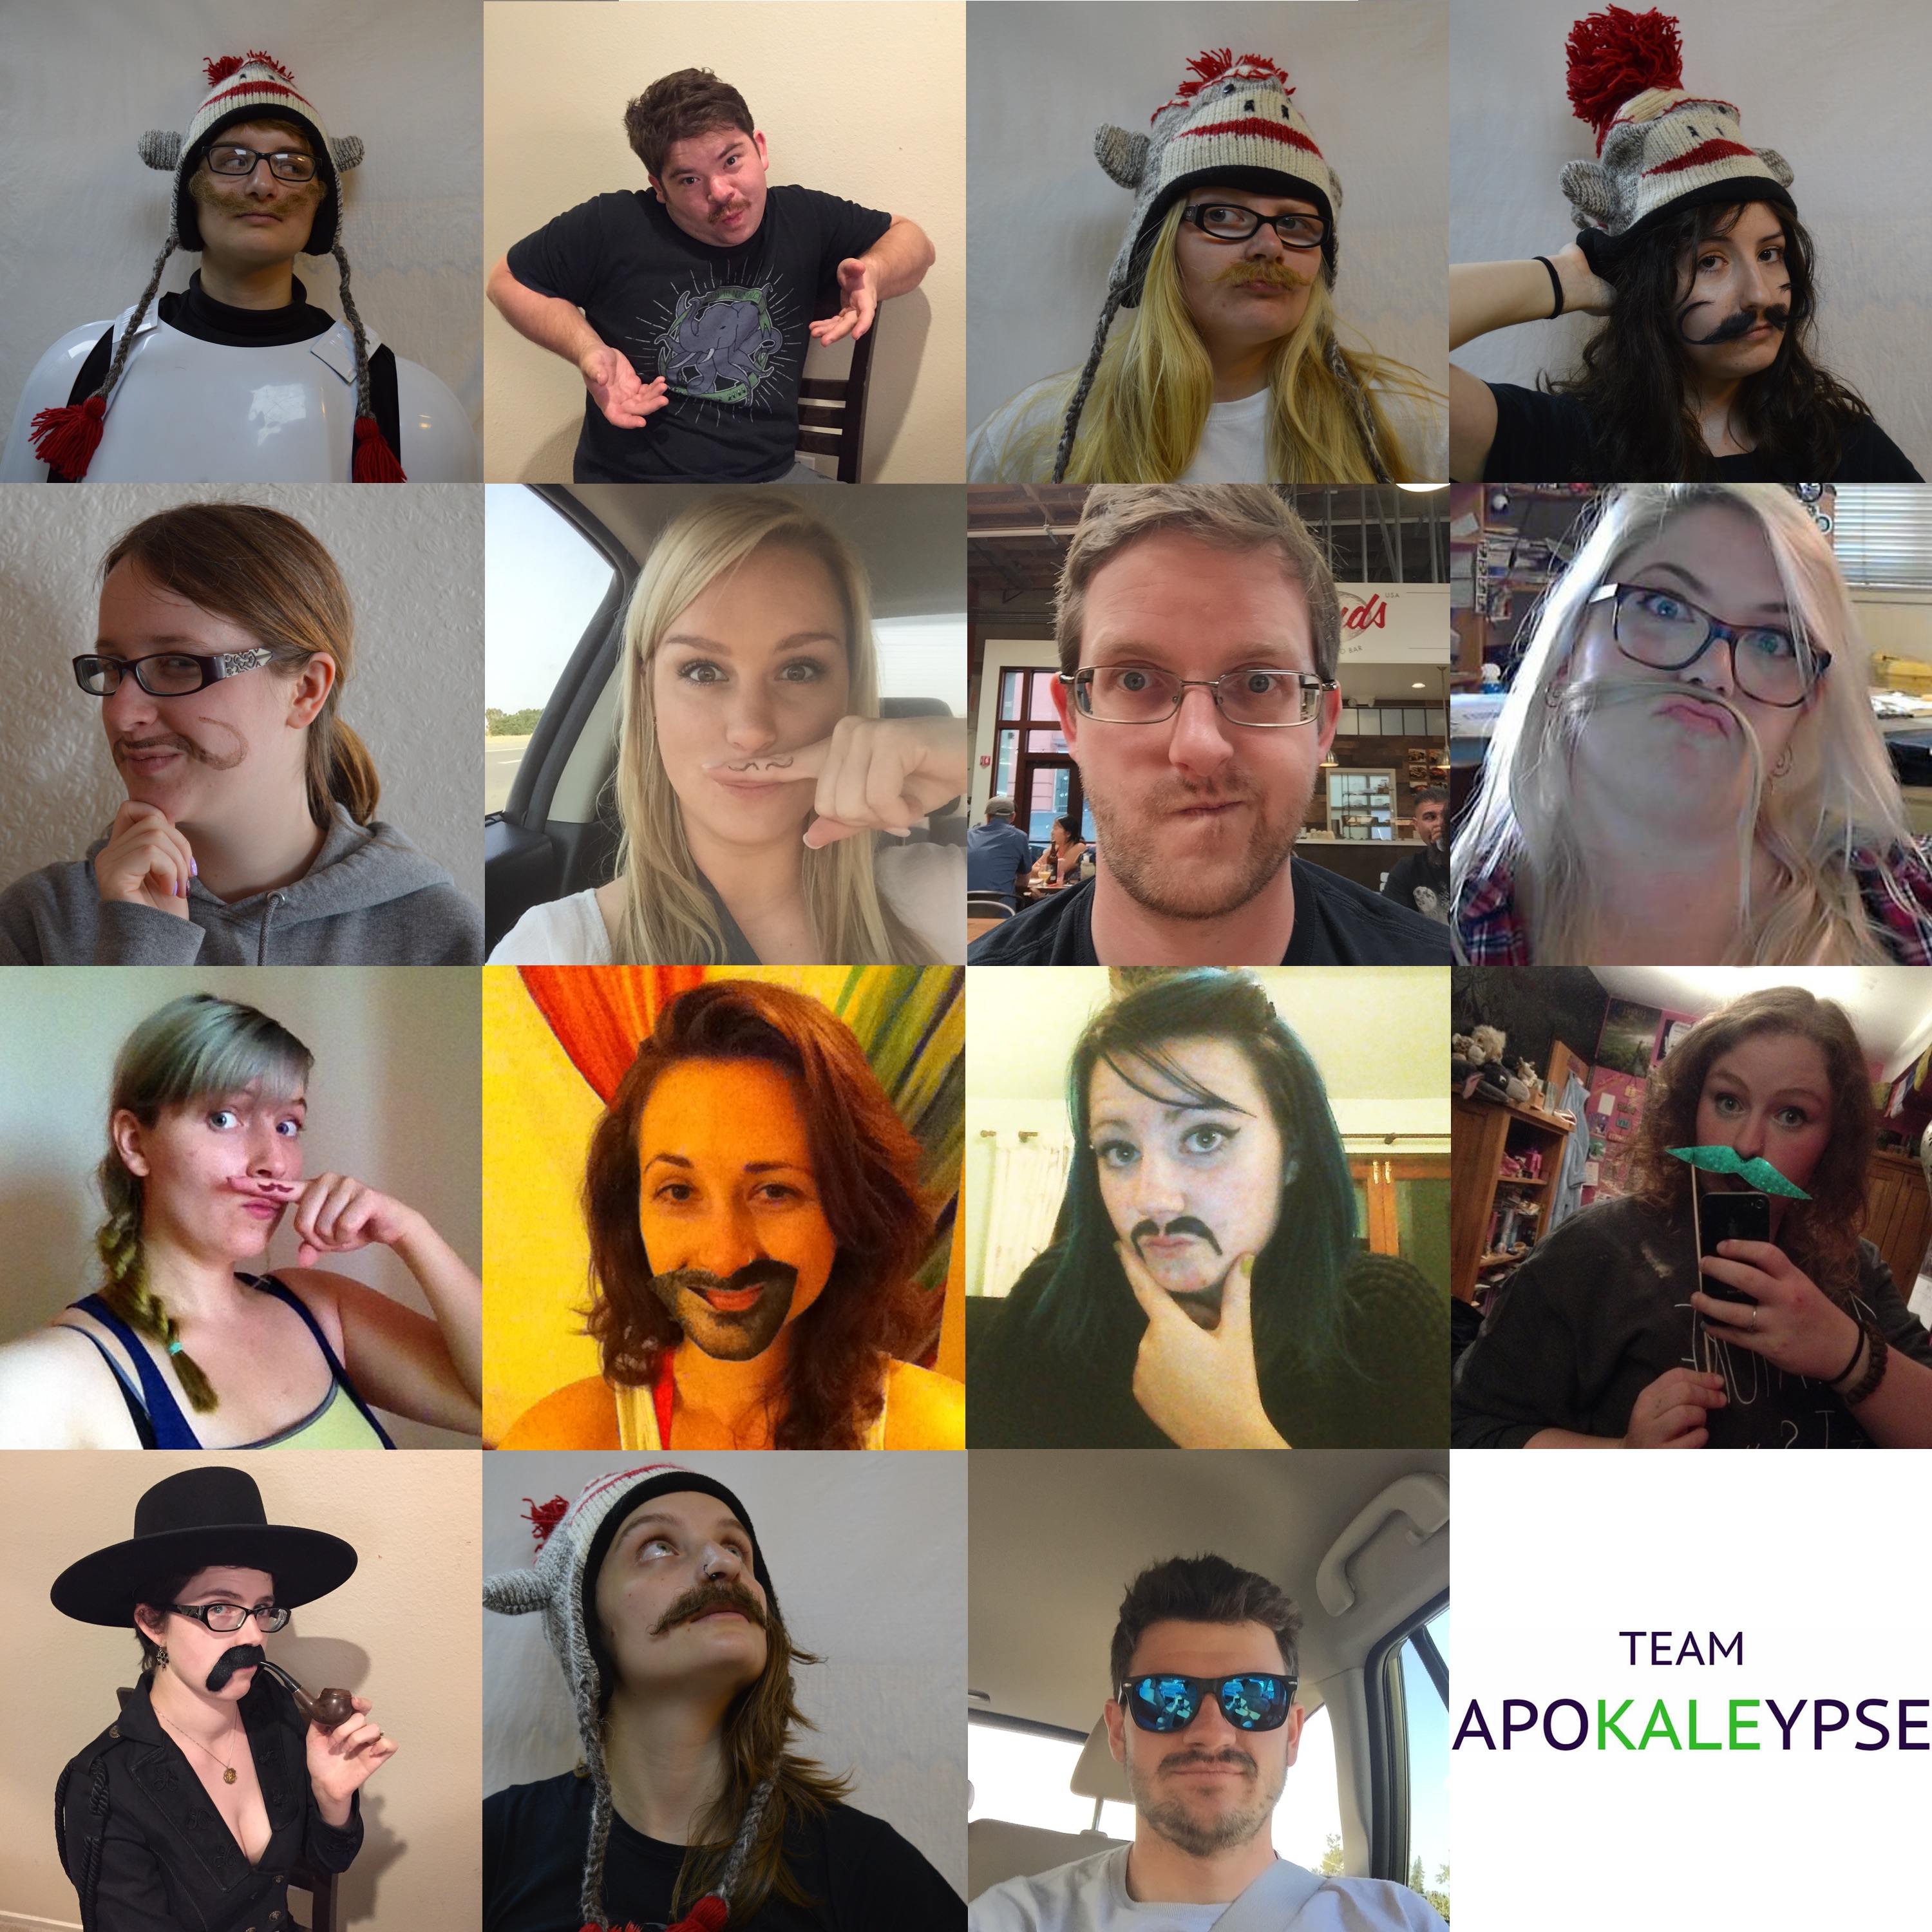 GISHWHES 2015 - Team Apokaleypse - Item 34 - Mustache Group Photo